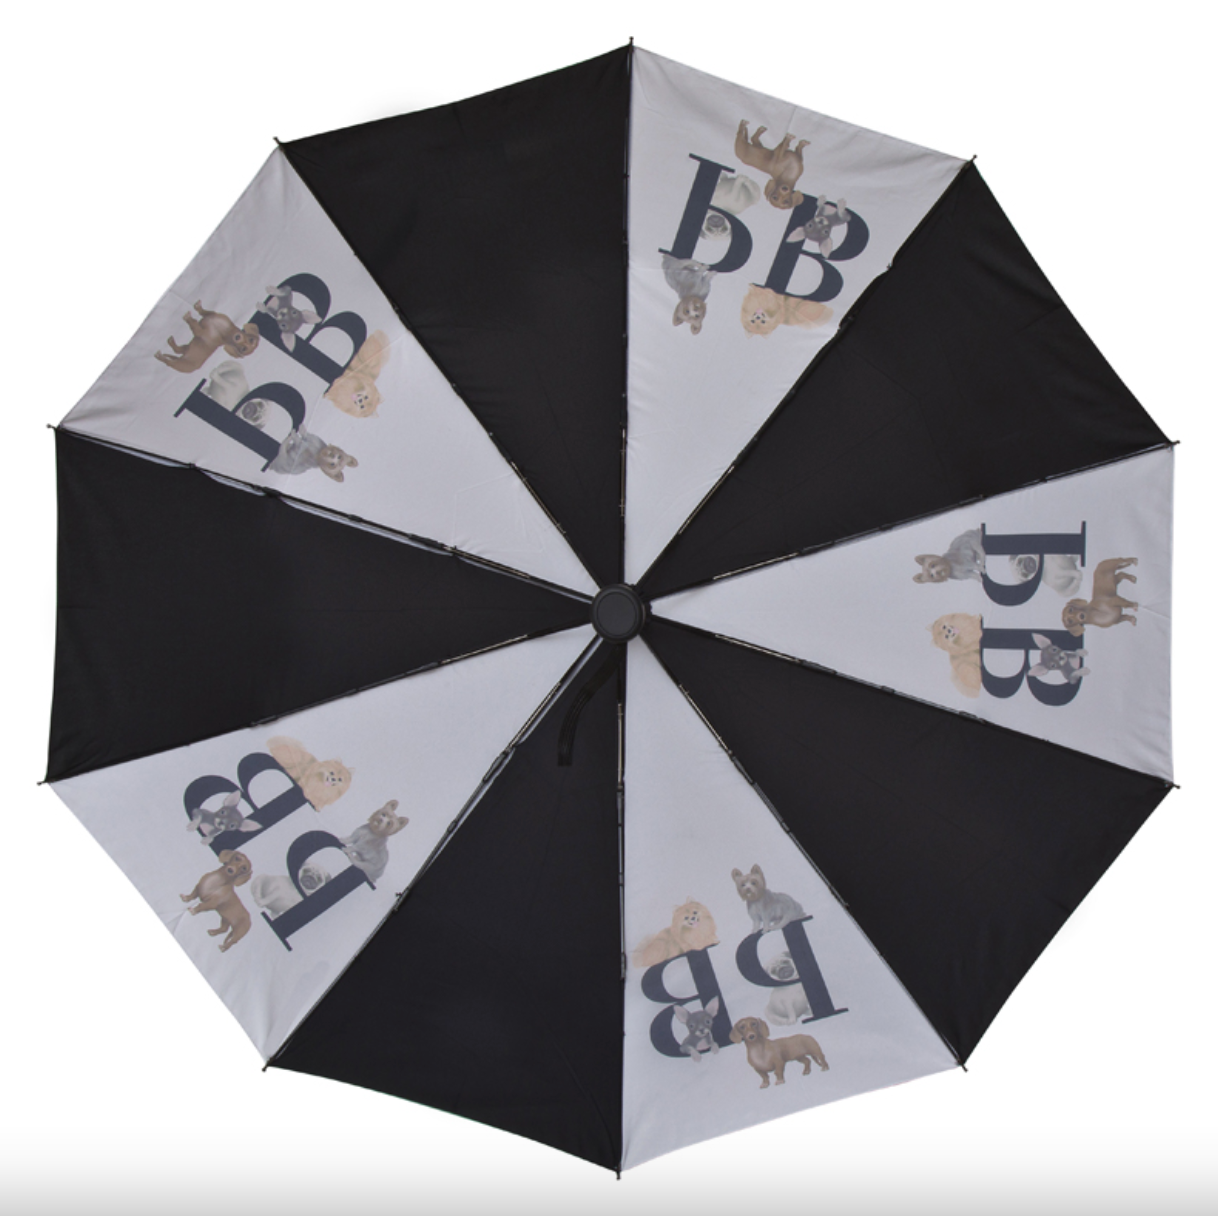 Faltbarer Regenschirm von DogMania: Stilvoller und nachhaltiger Regenschirm für Hundeliebhaber